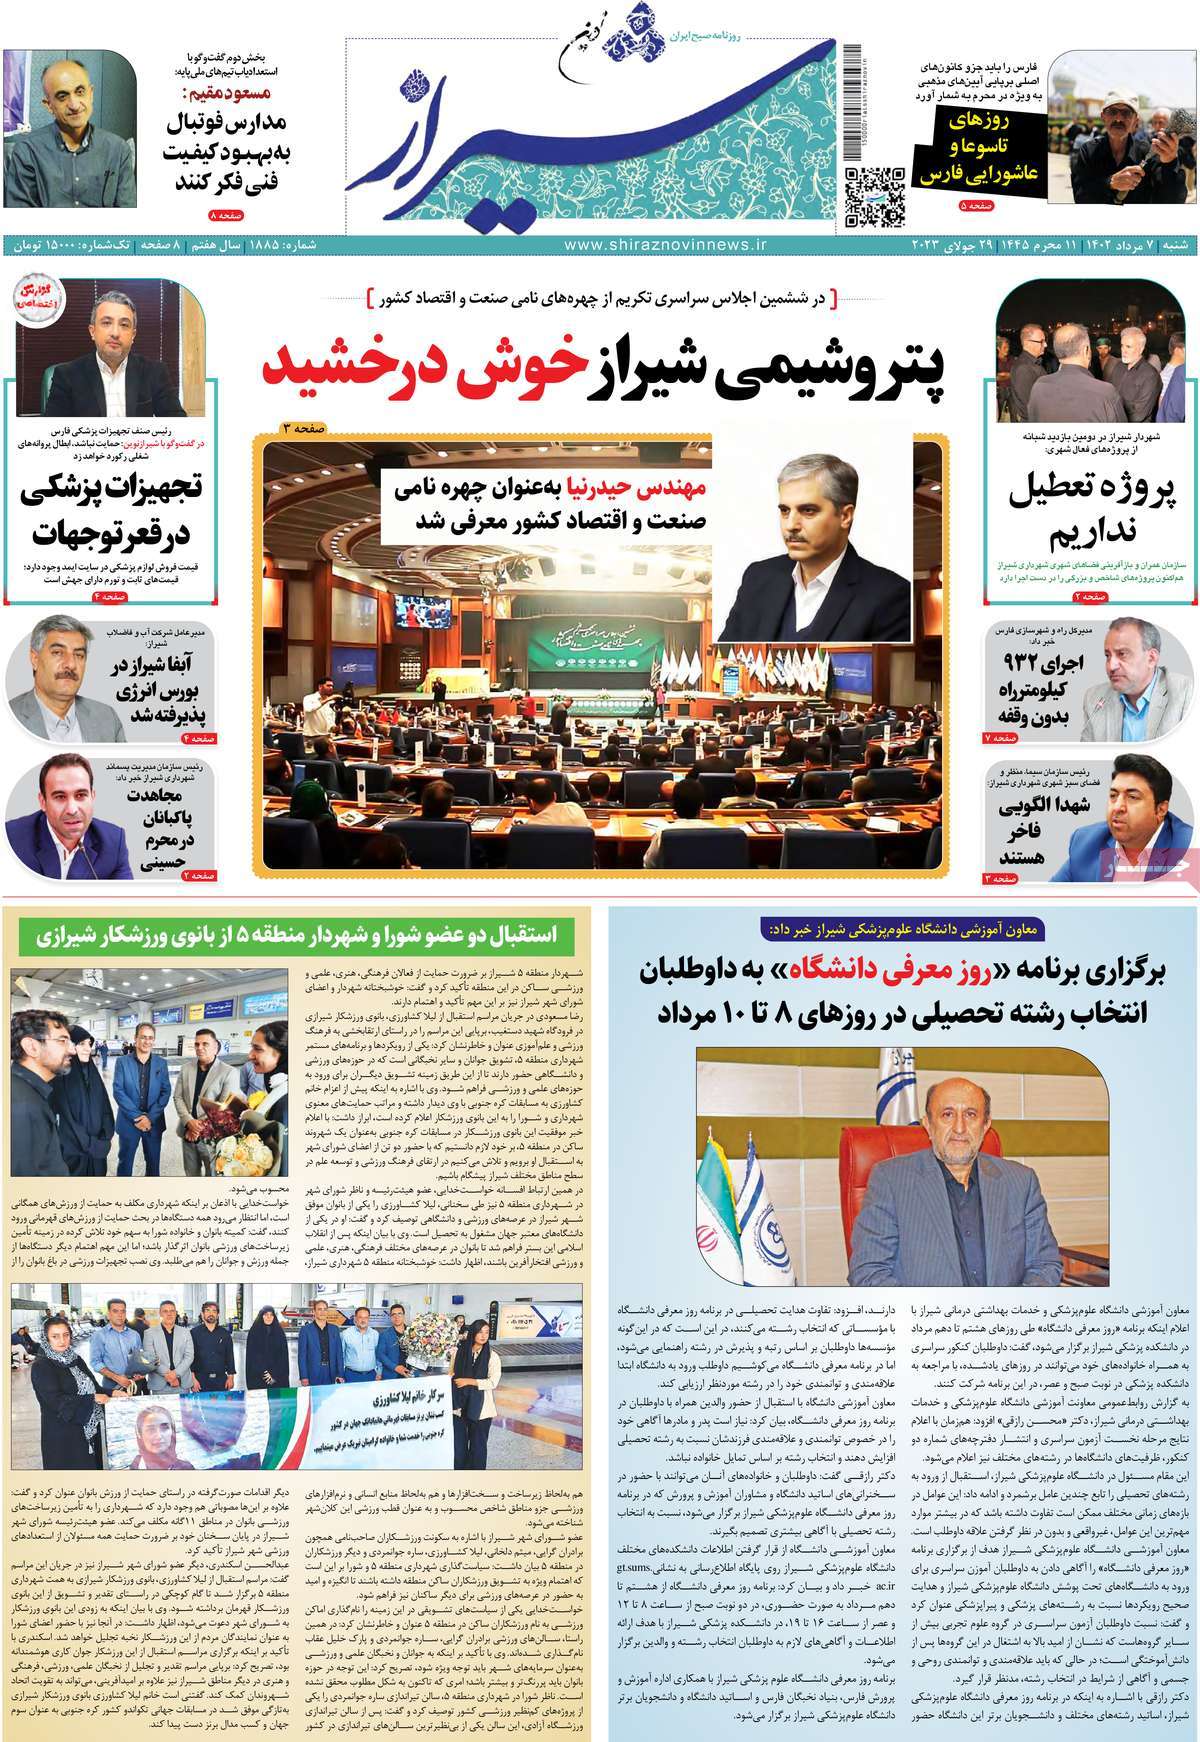 صفحه اول روزنامه های استانی / روزنامه شیراز نوین